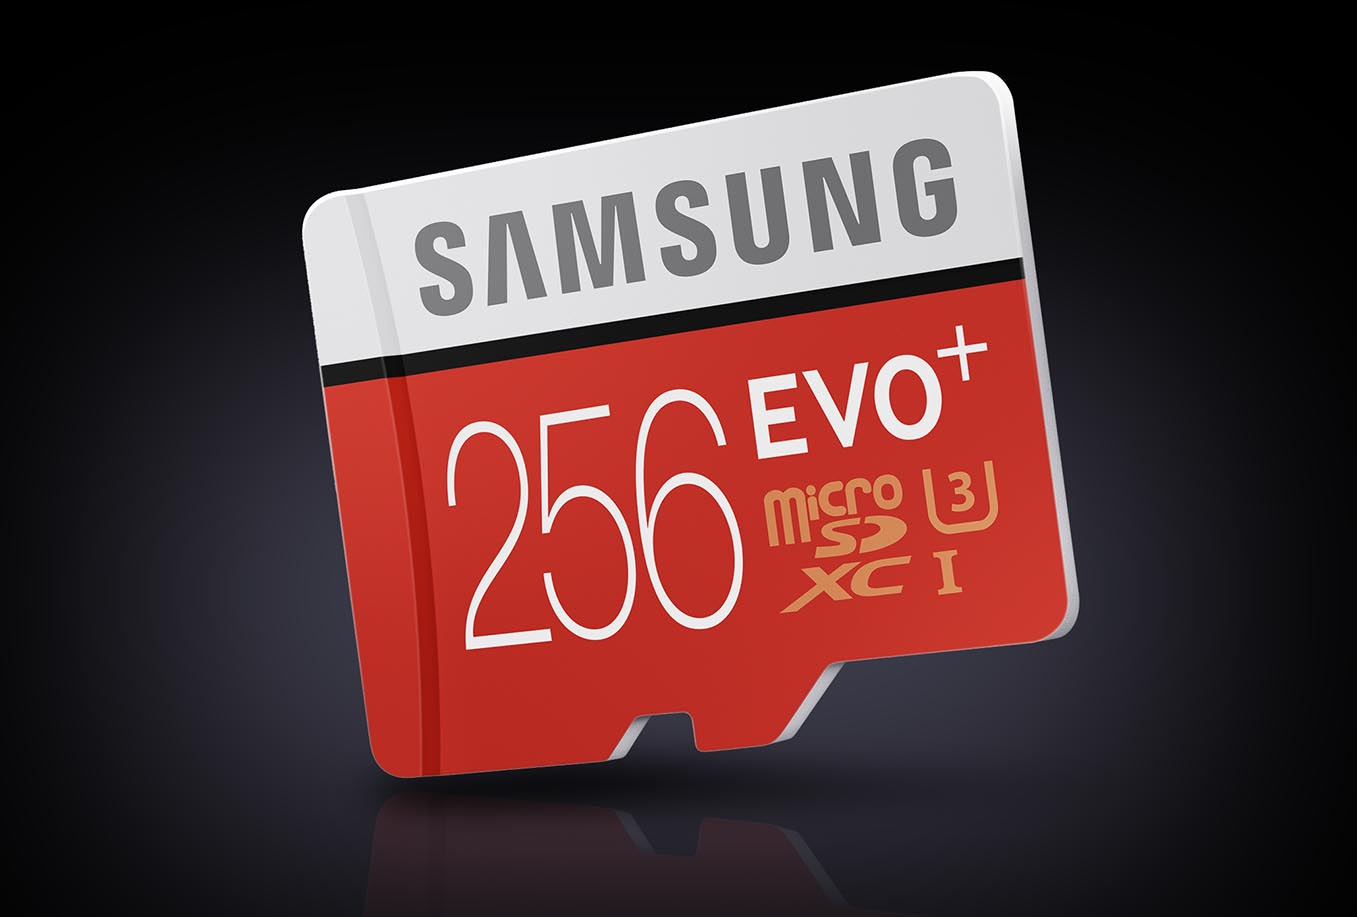 Samsung Evo Plus 256